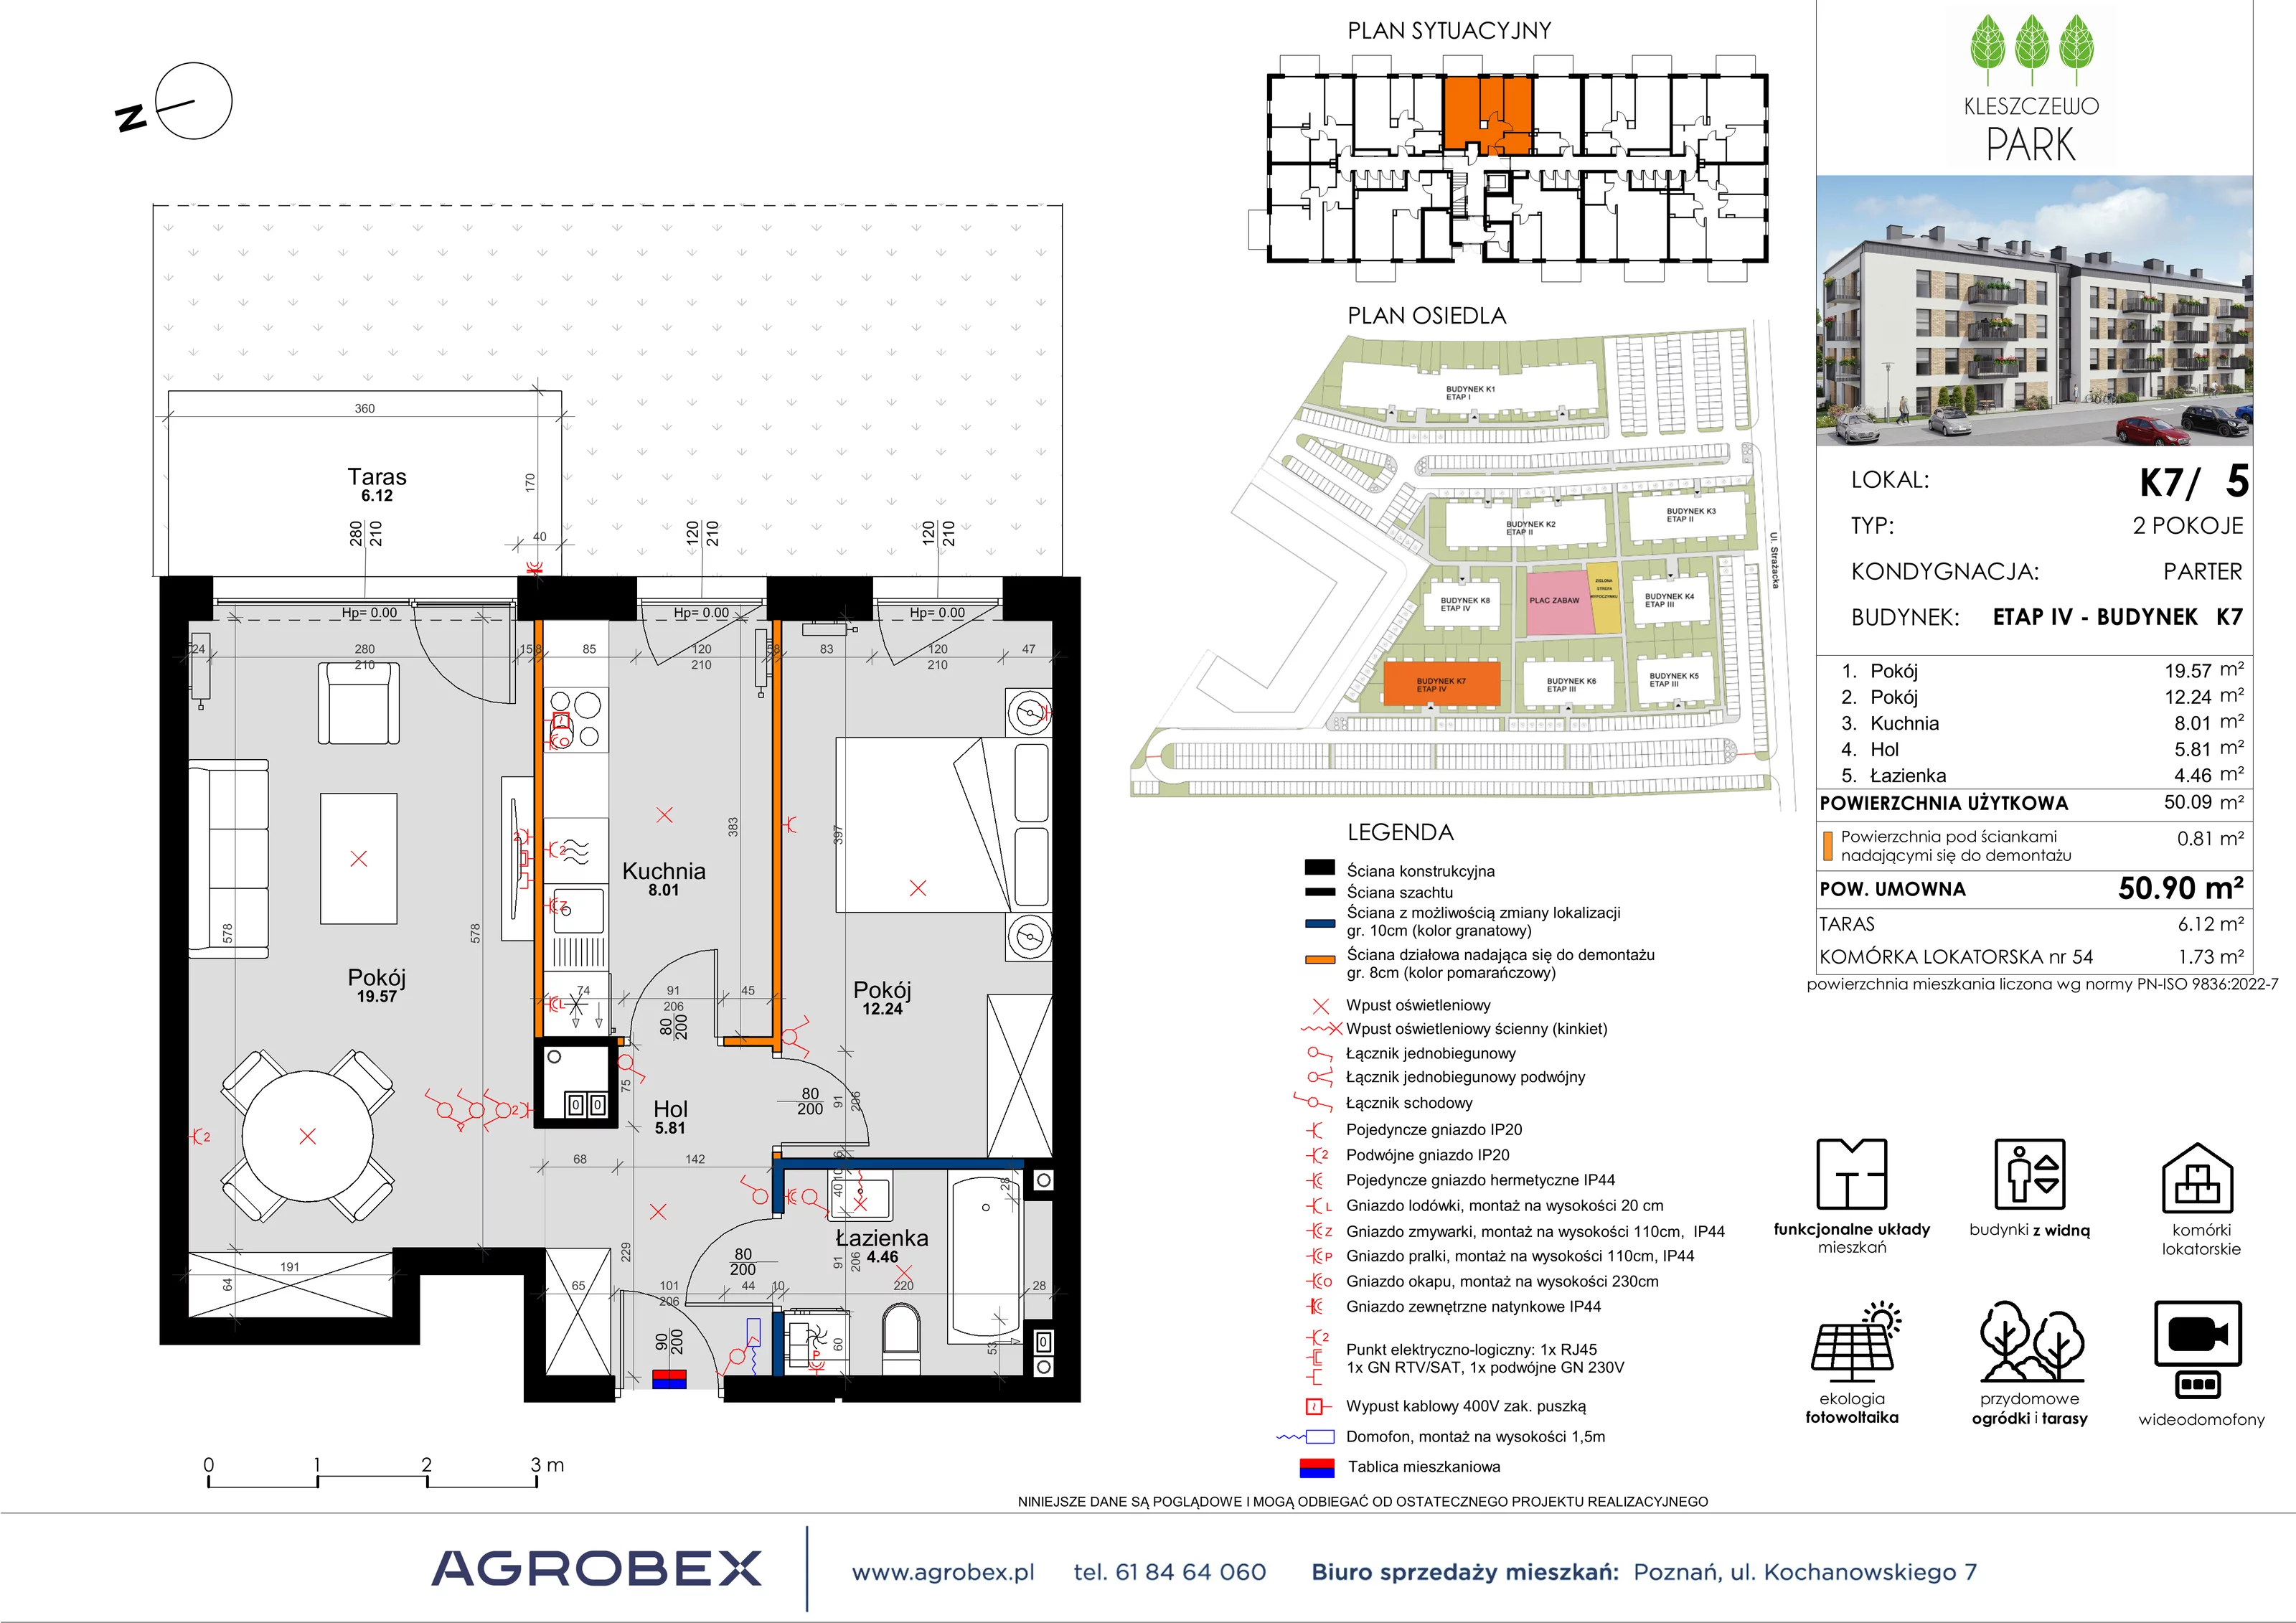 Mieszkanie 50,90 m², parter, oferta nr K7/5, Kleszczewo Park, Kleszczewo, ul. Wiesławy Szymborskiej 1